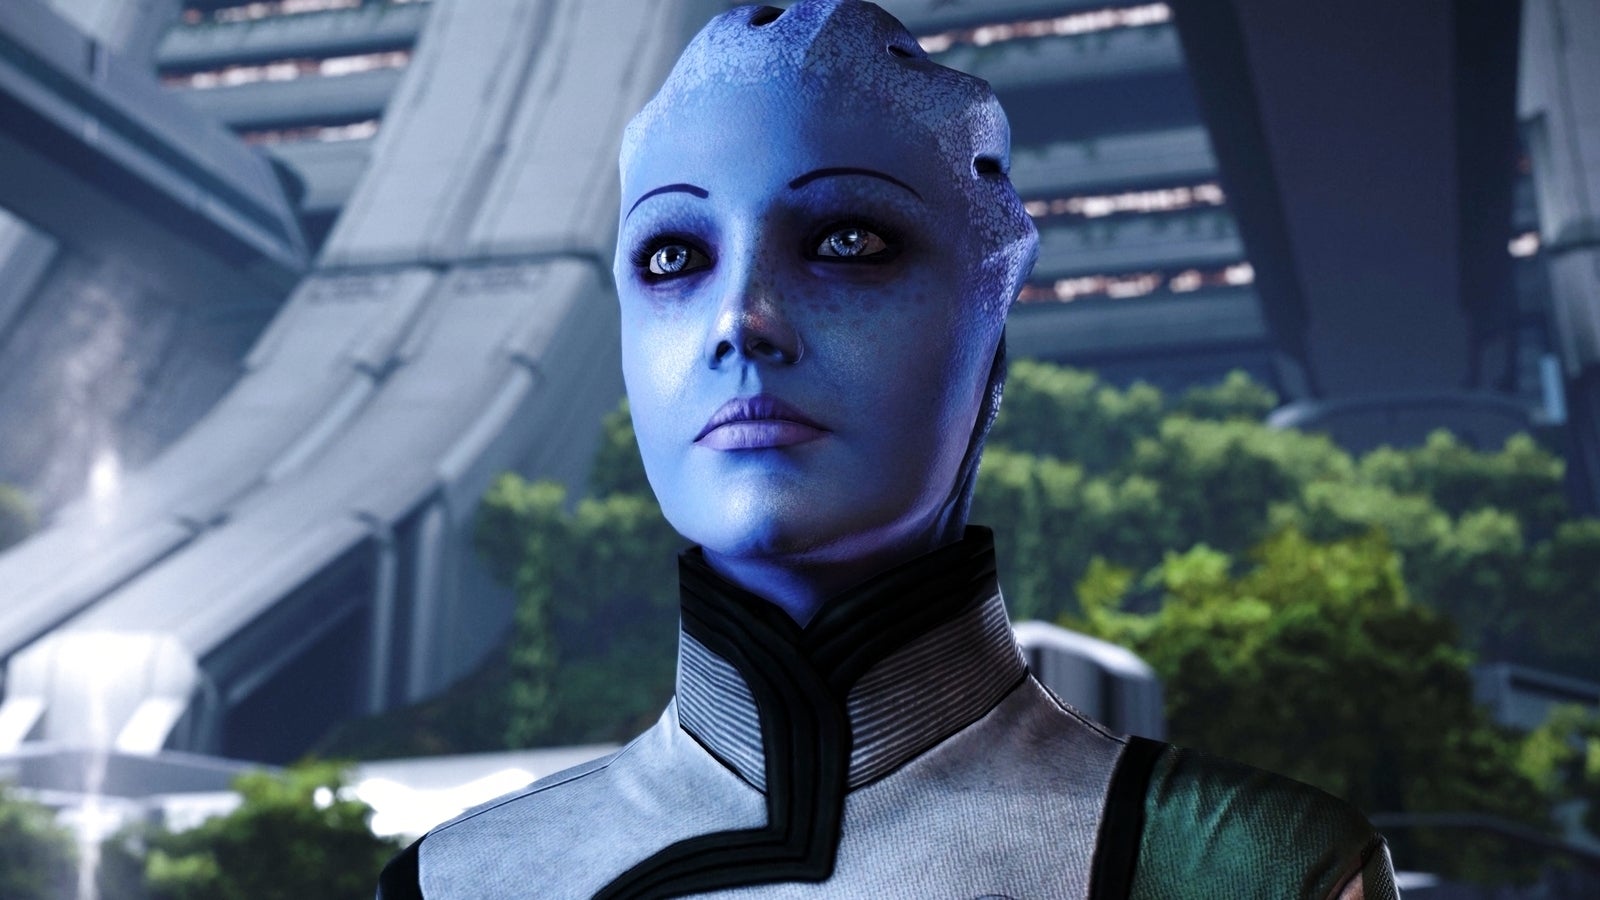 Bilder zu Mass Effect Legendary Edition ändert die Spezies eines NPCs und behebt damit einen alten Bug